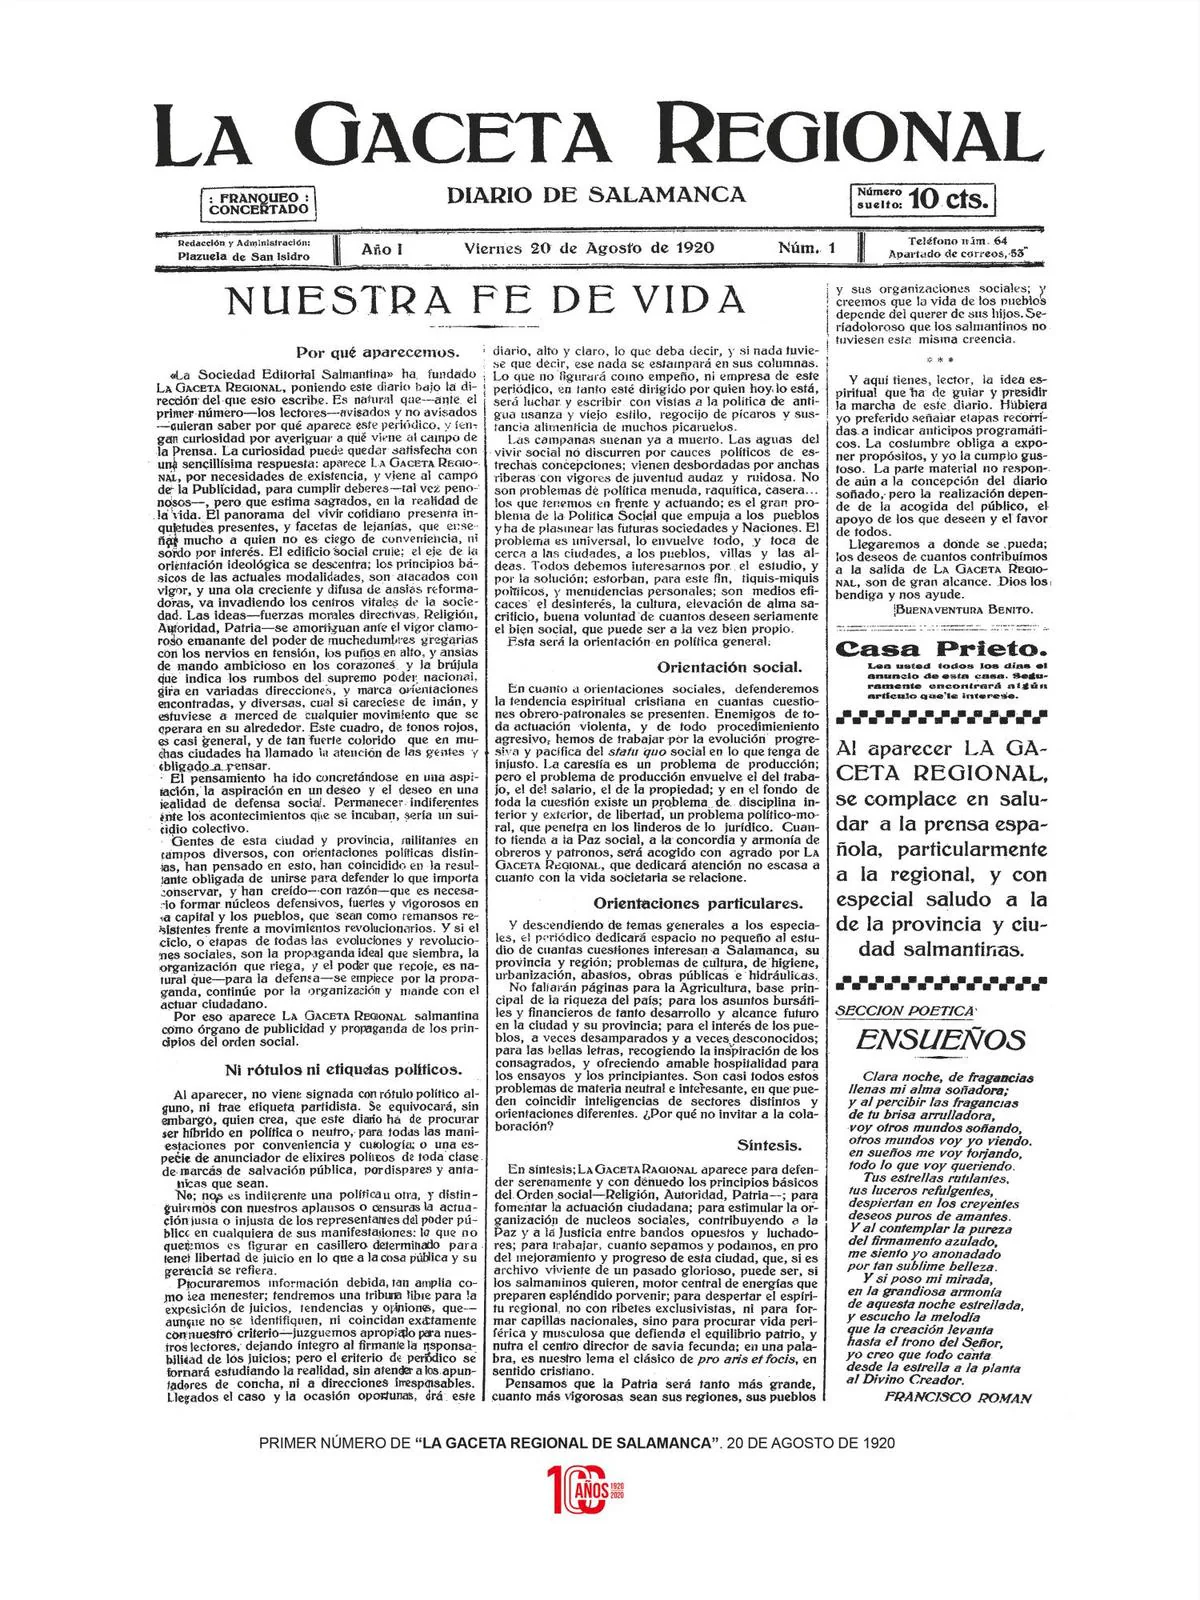 El primer número de LA GACETA, que salió publicado el 20 de agosto de 1920